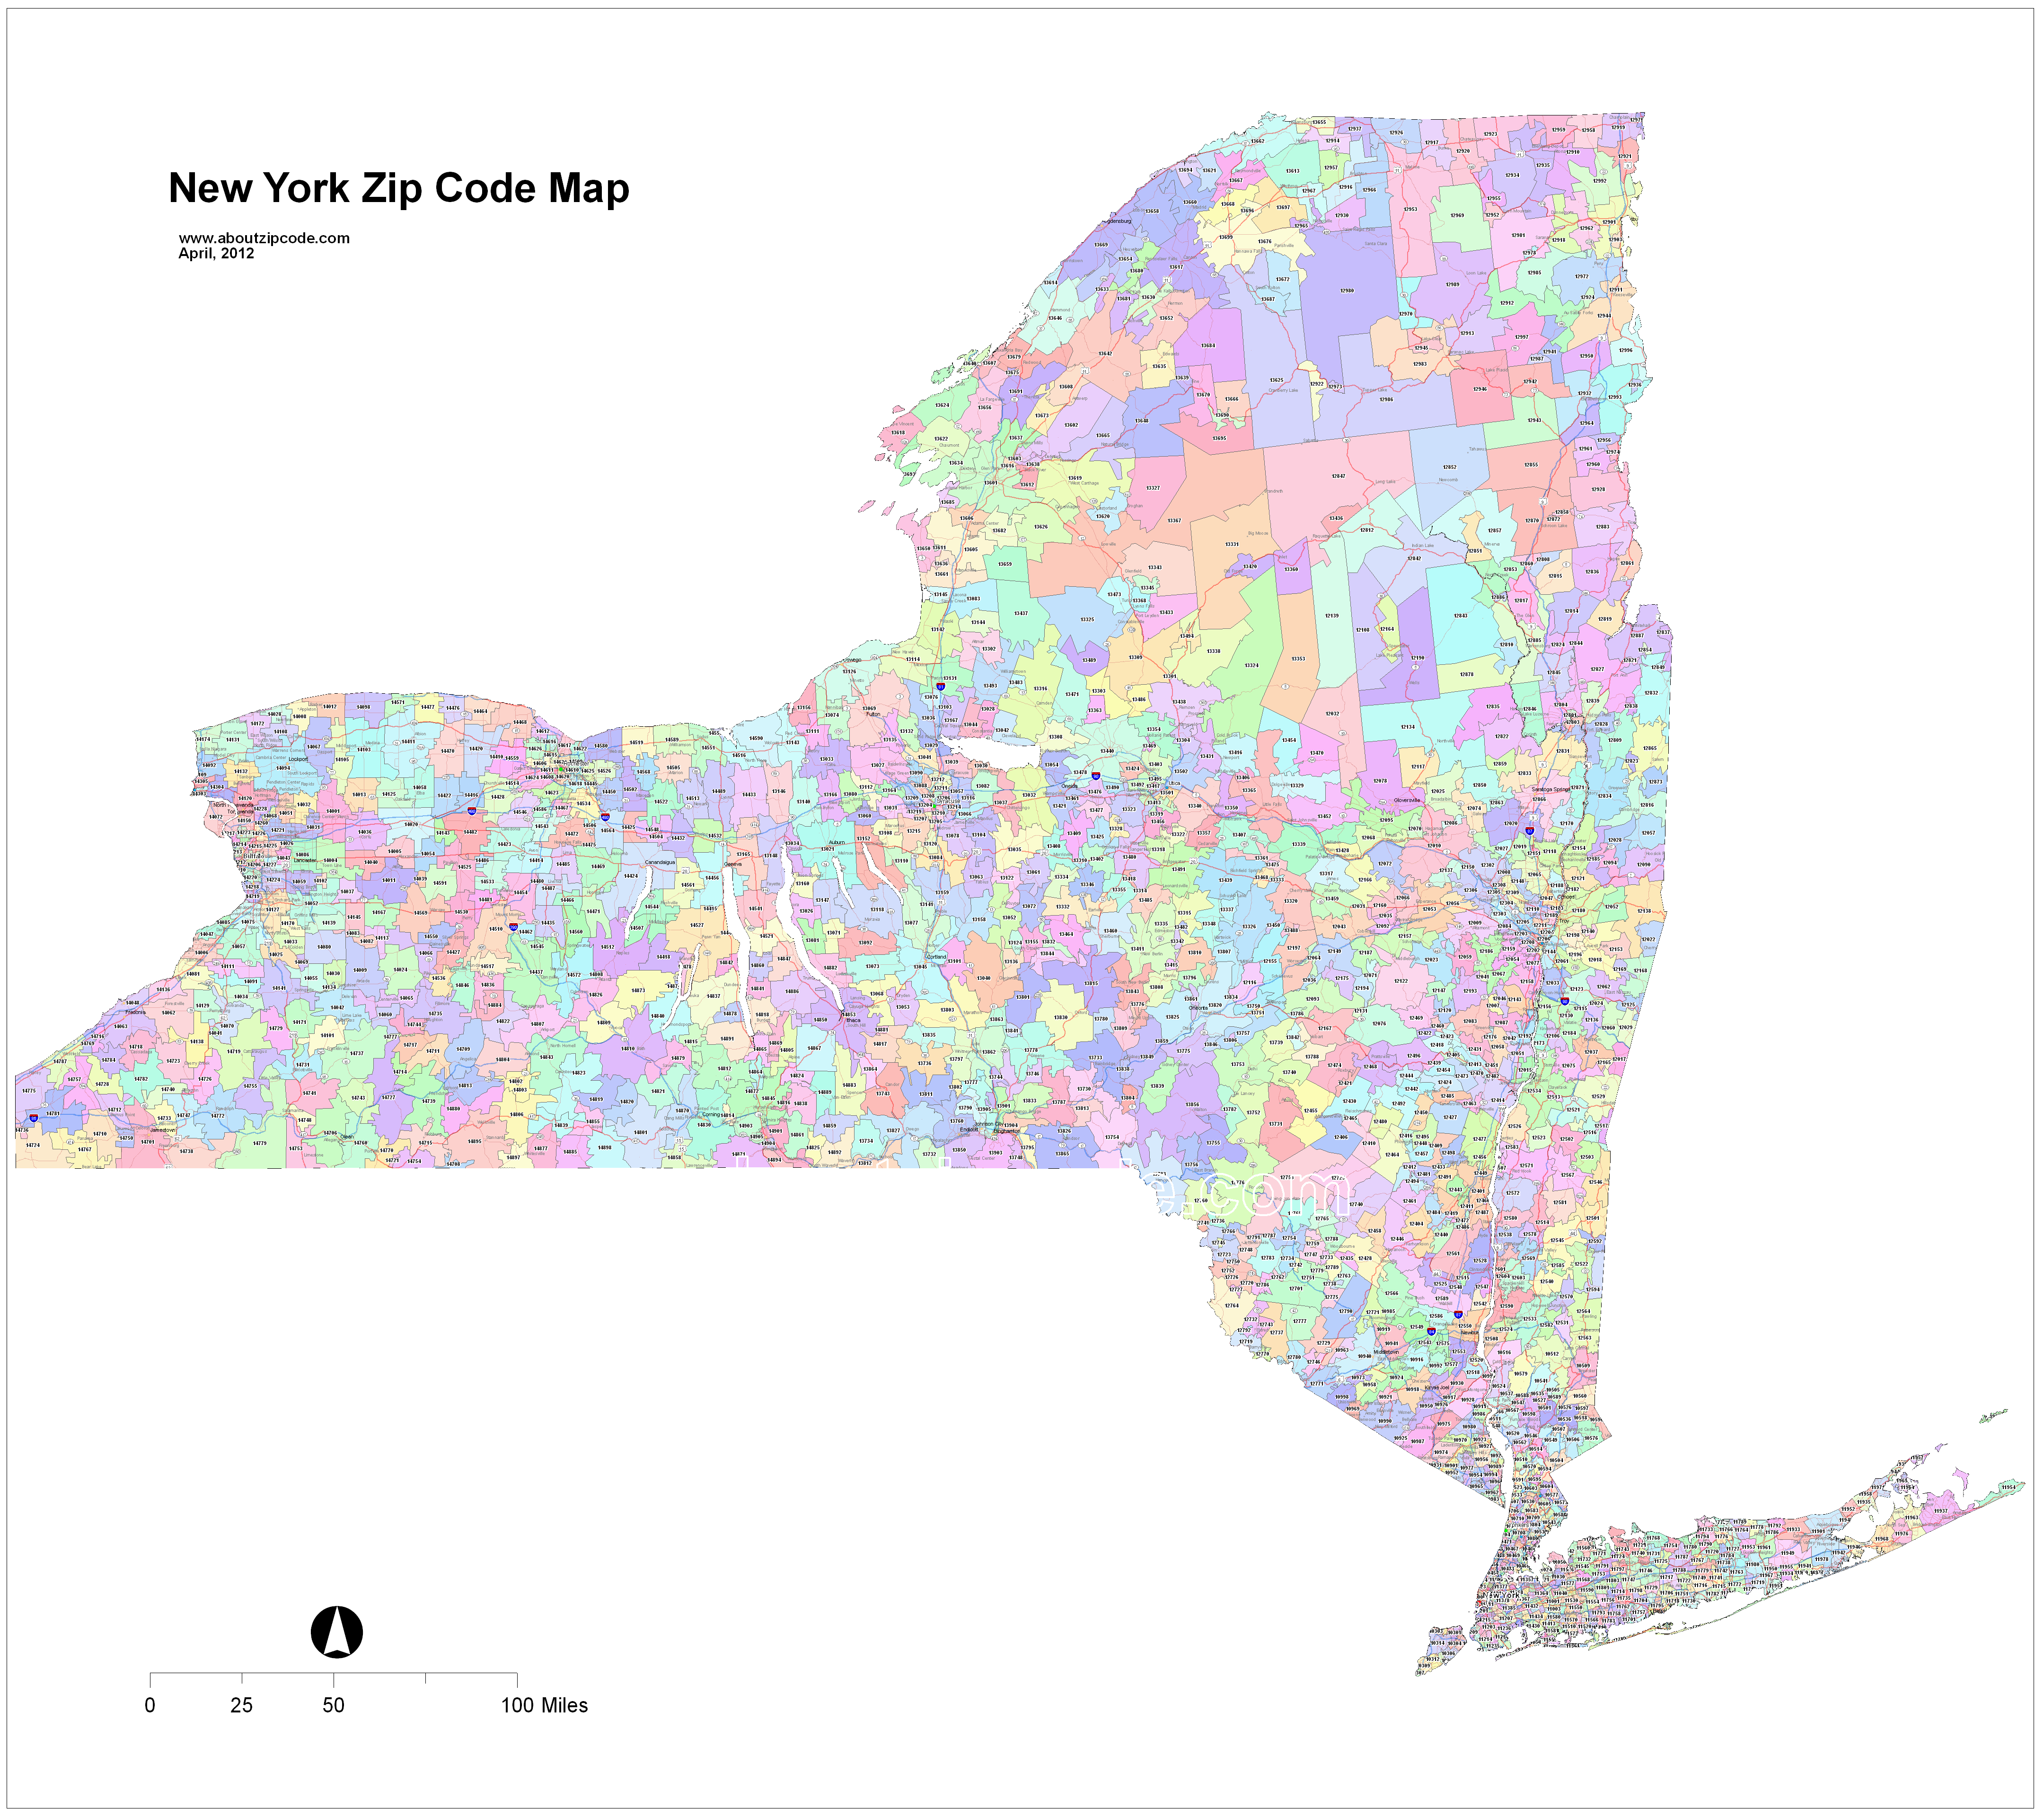 New York Zip Code Maps Free New York Zip Code Maps